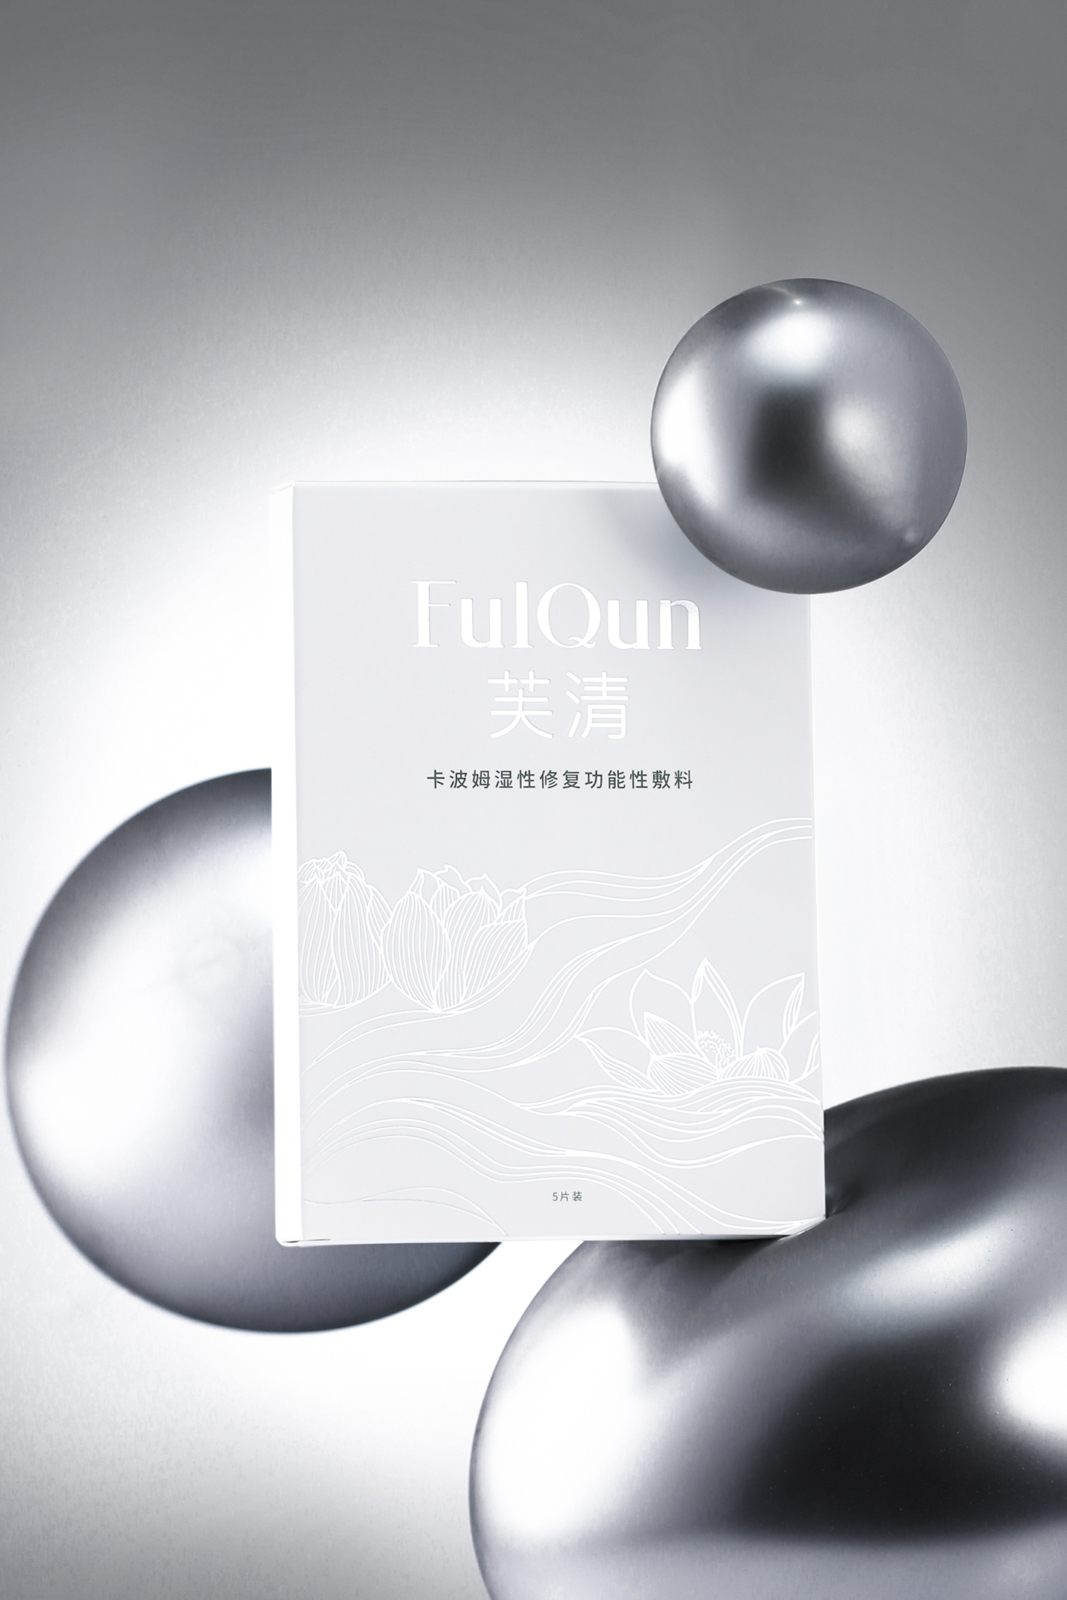 Fulqun - Un design pensé par l’agence de design de Paris Partisan du Sens.